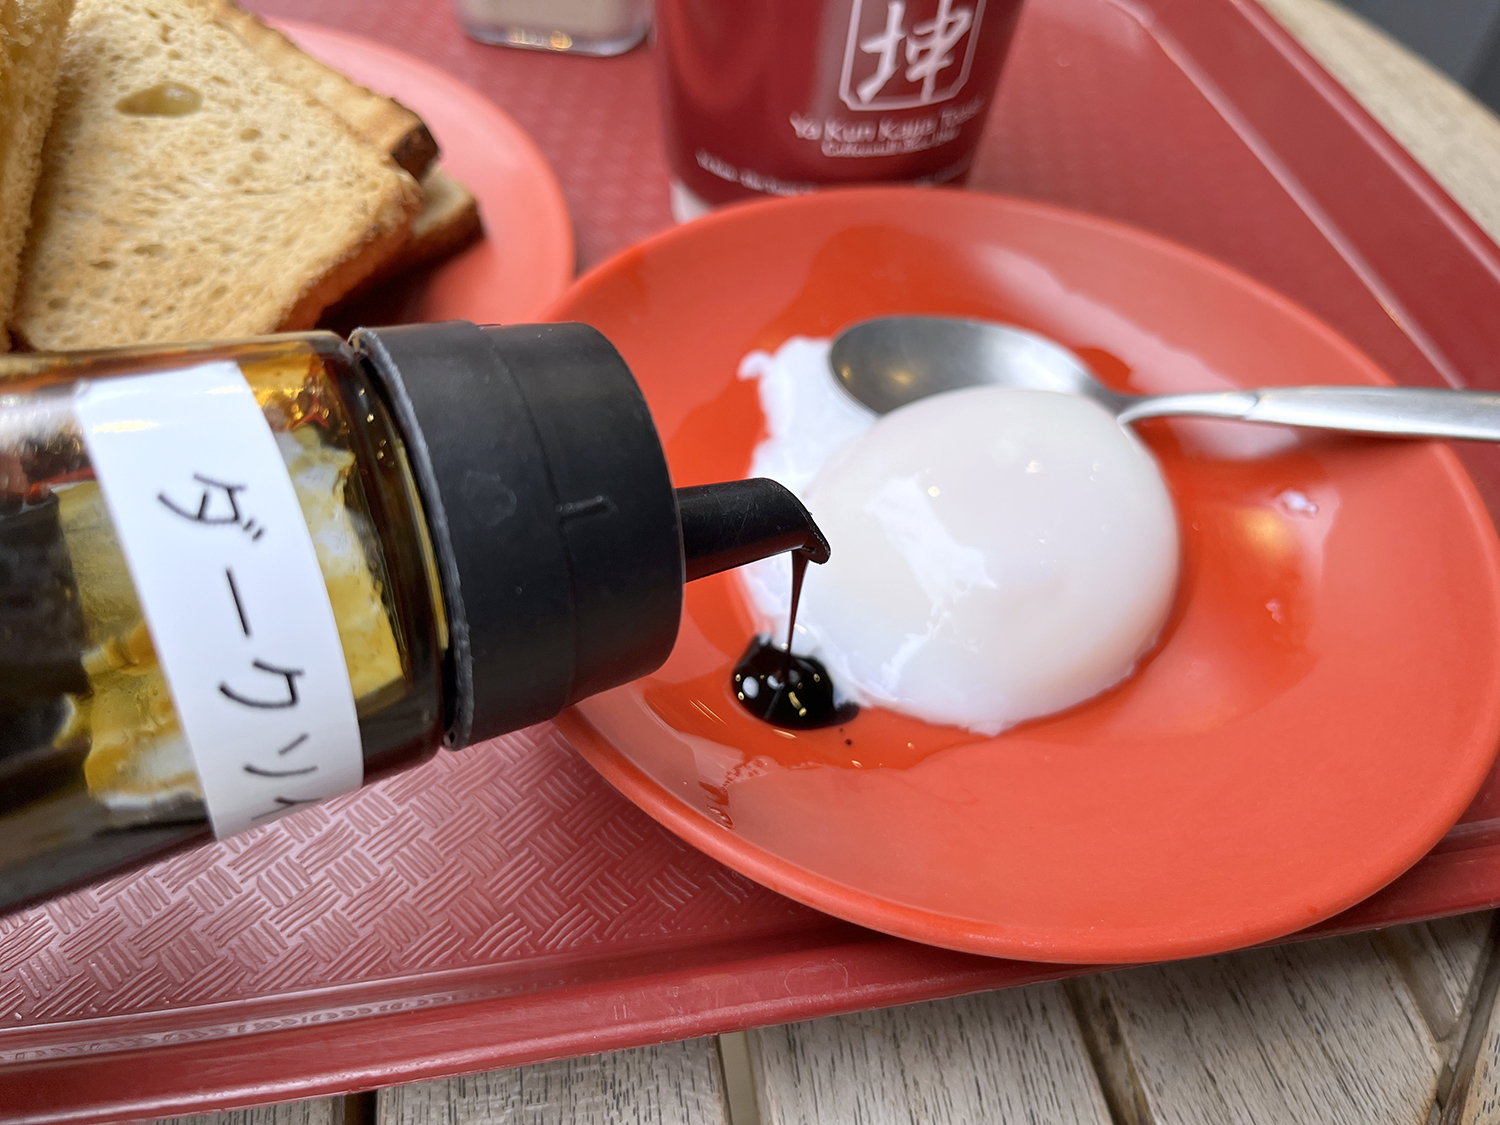 ダークソイソースは九州醤油に似た甘めの醤油。見た目は黒蜜のようにとろみがある。